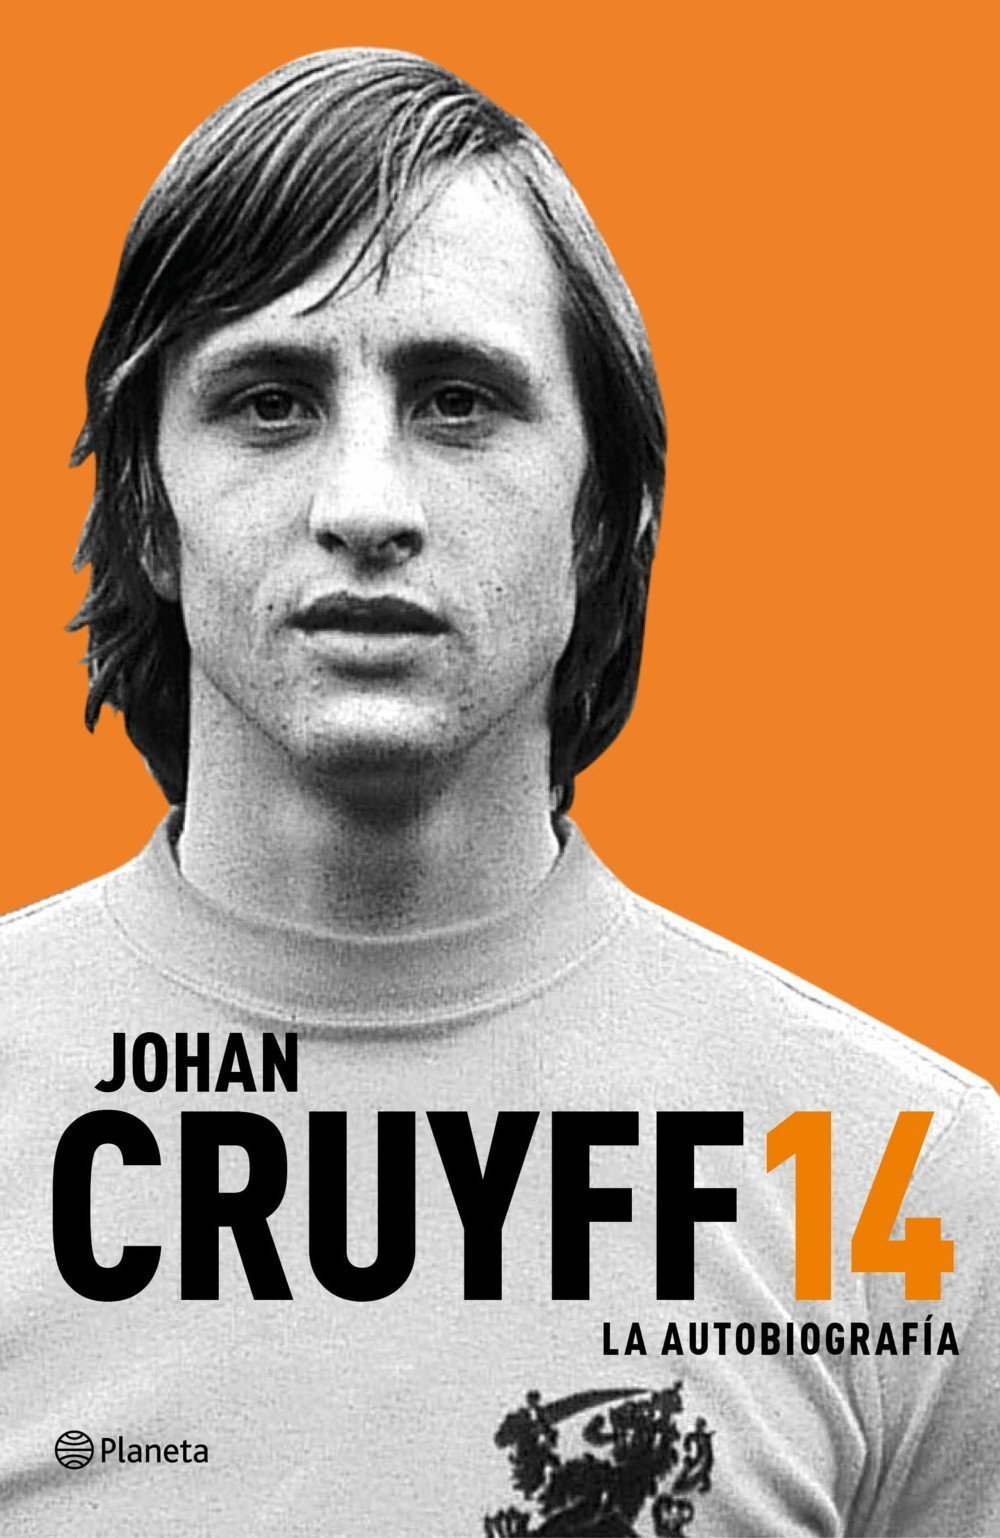 Primeras páginas de 14, la autobiografía de Johan Cruyff